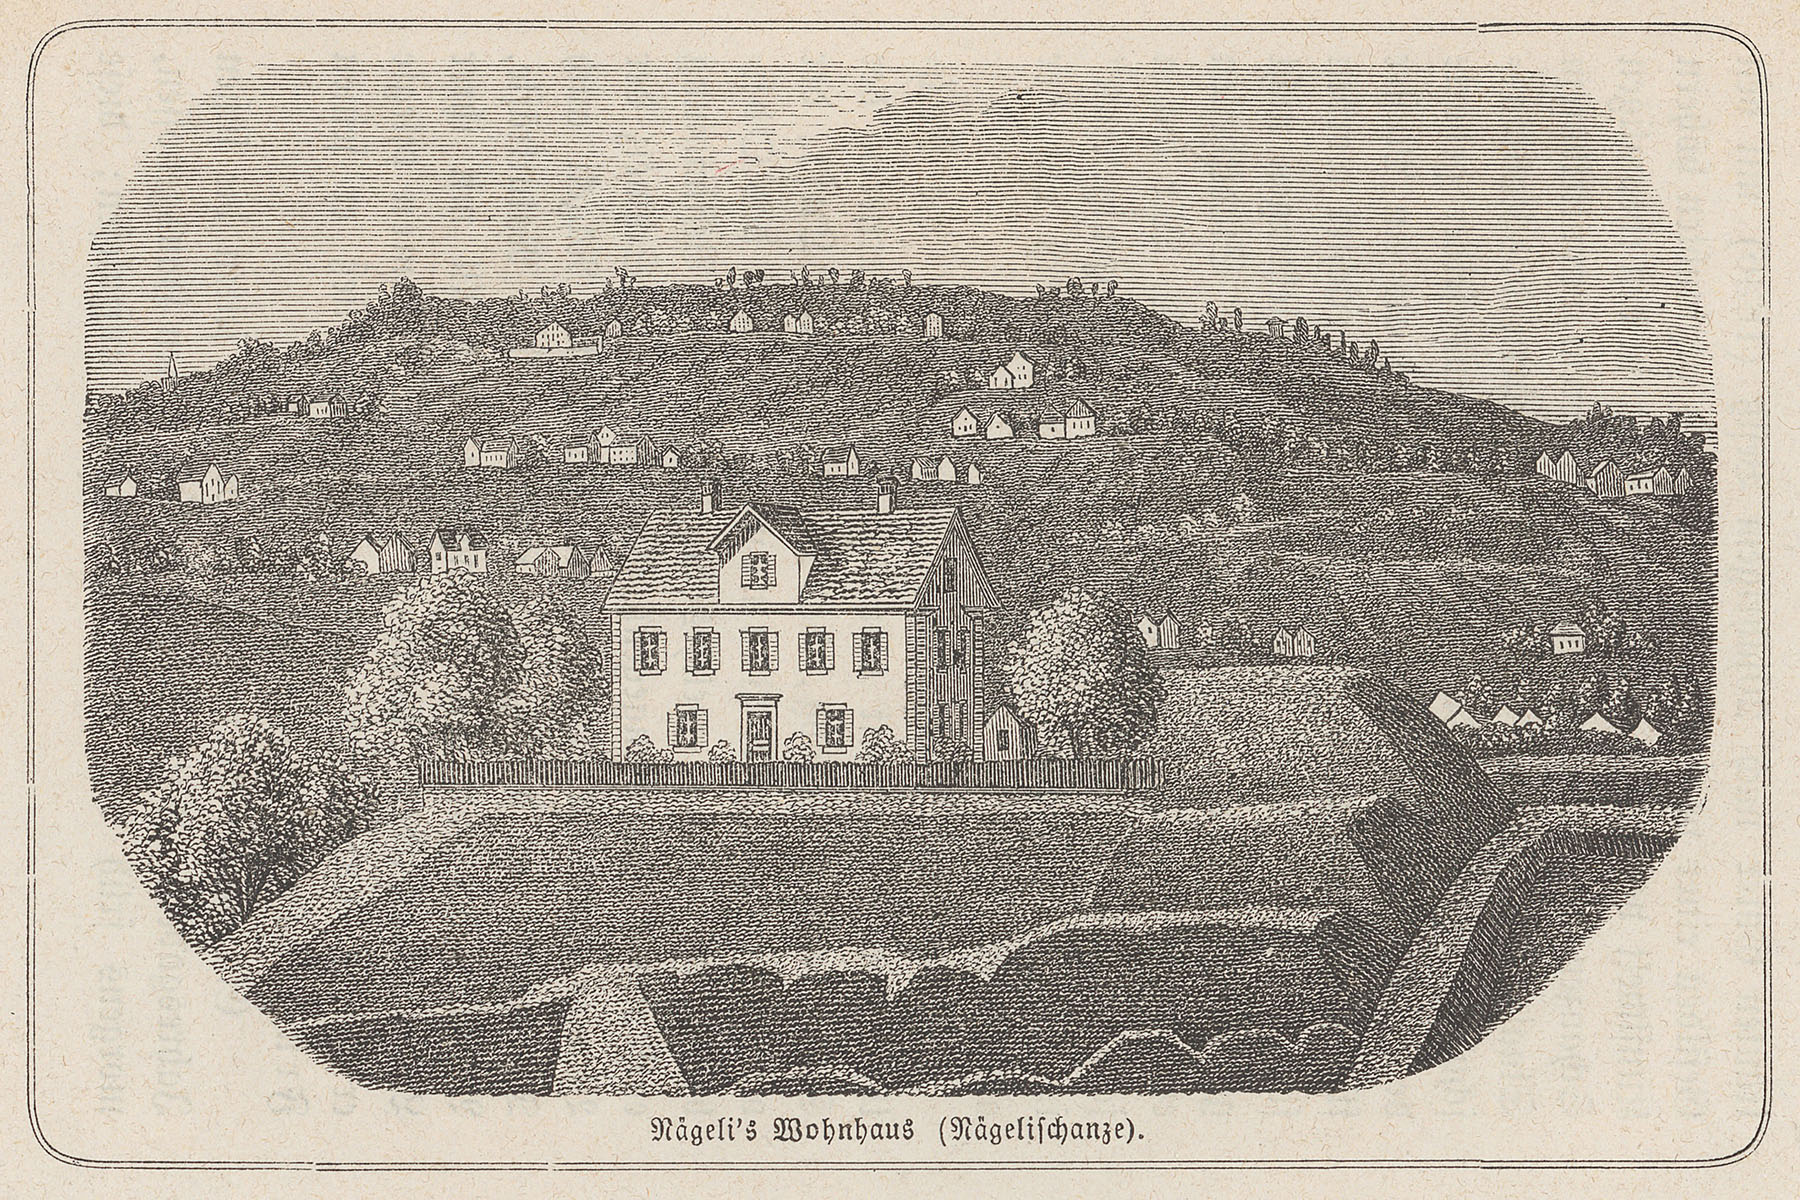 Nägelis Wohnhaus auf der sogenannten «Nägelischanze», zwischen 1840 und 1880. Die «Nägelischanze» ist Teil des Rämibollwerks, das wiederum ein Teil der damaligen Stadtbefestigung ist. (Bild: ZB Zürich) 